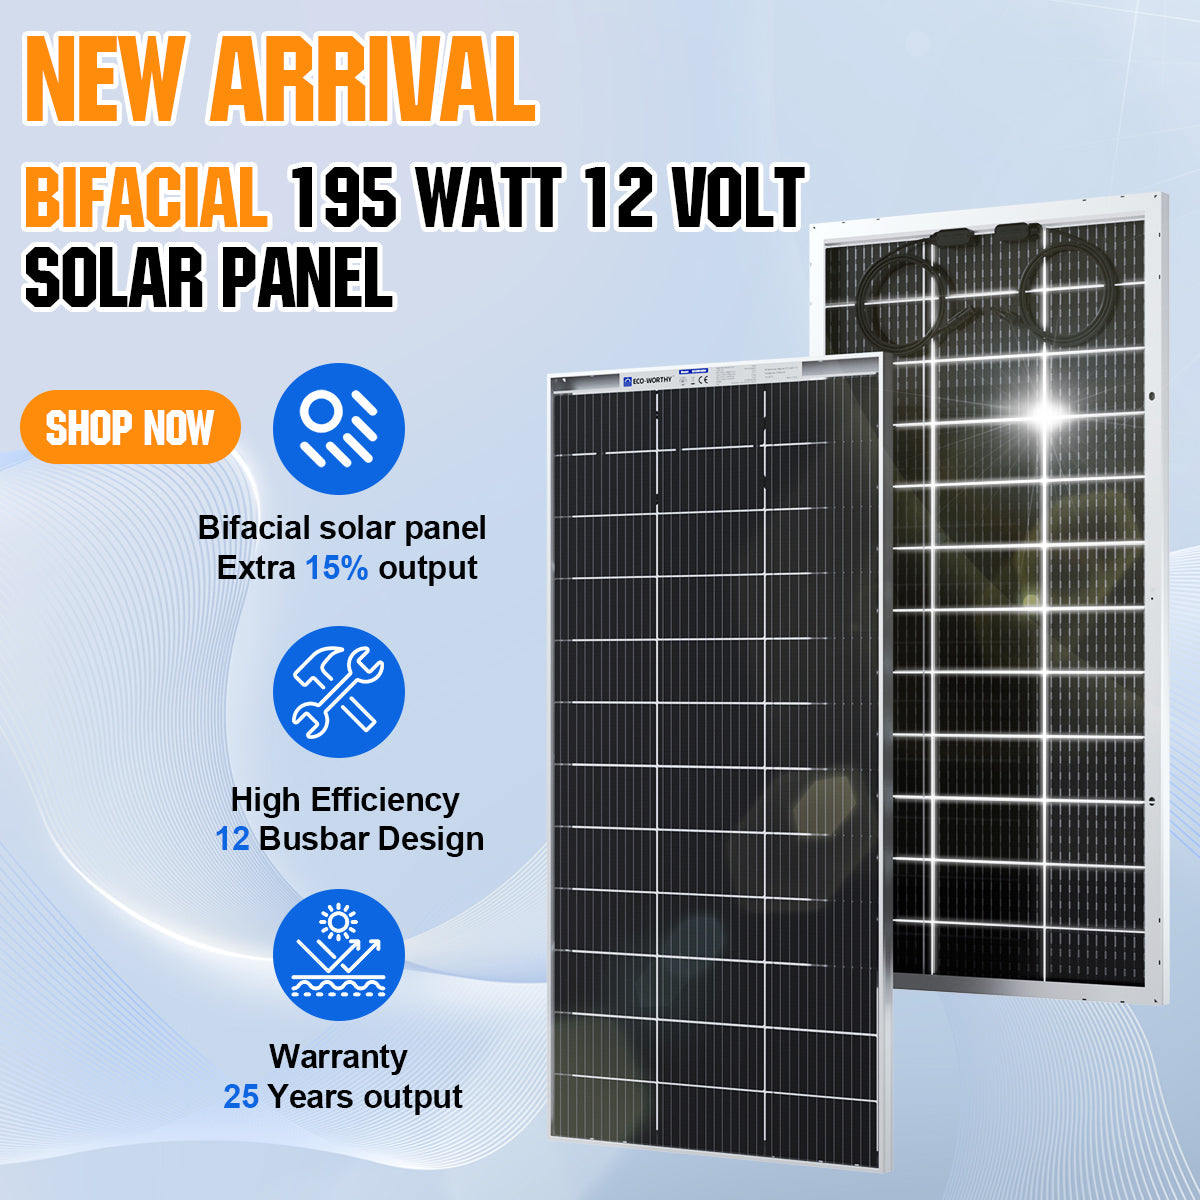 ECO-WORTHY 200W 400W 800W Watt 12V Solar Panel Kit LiFePO4 Battery